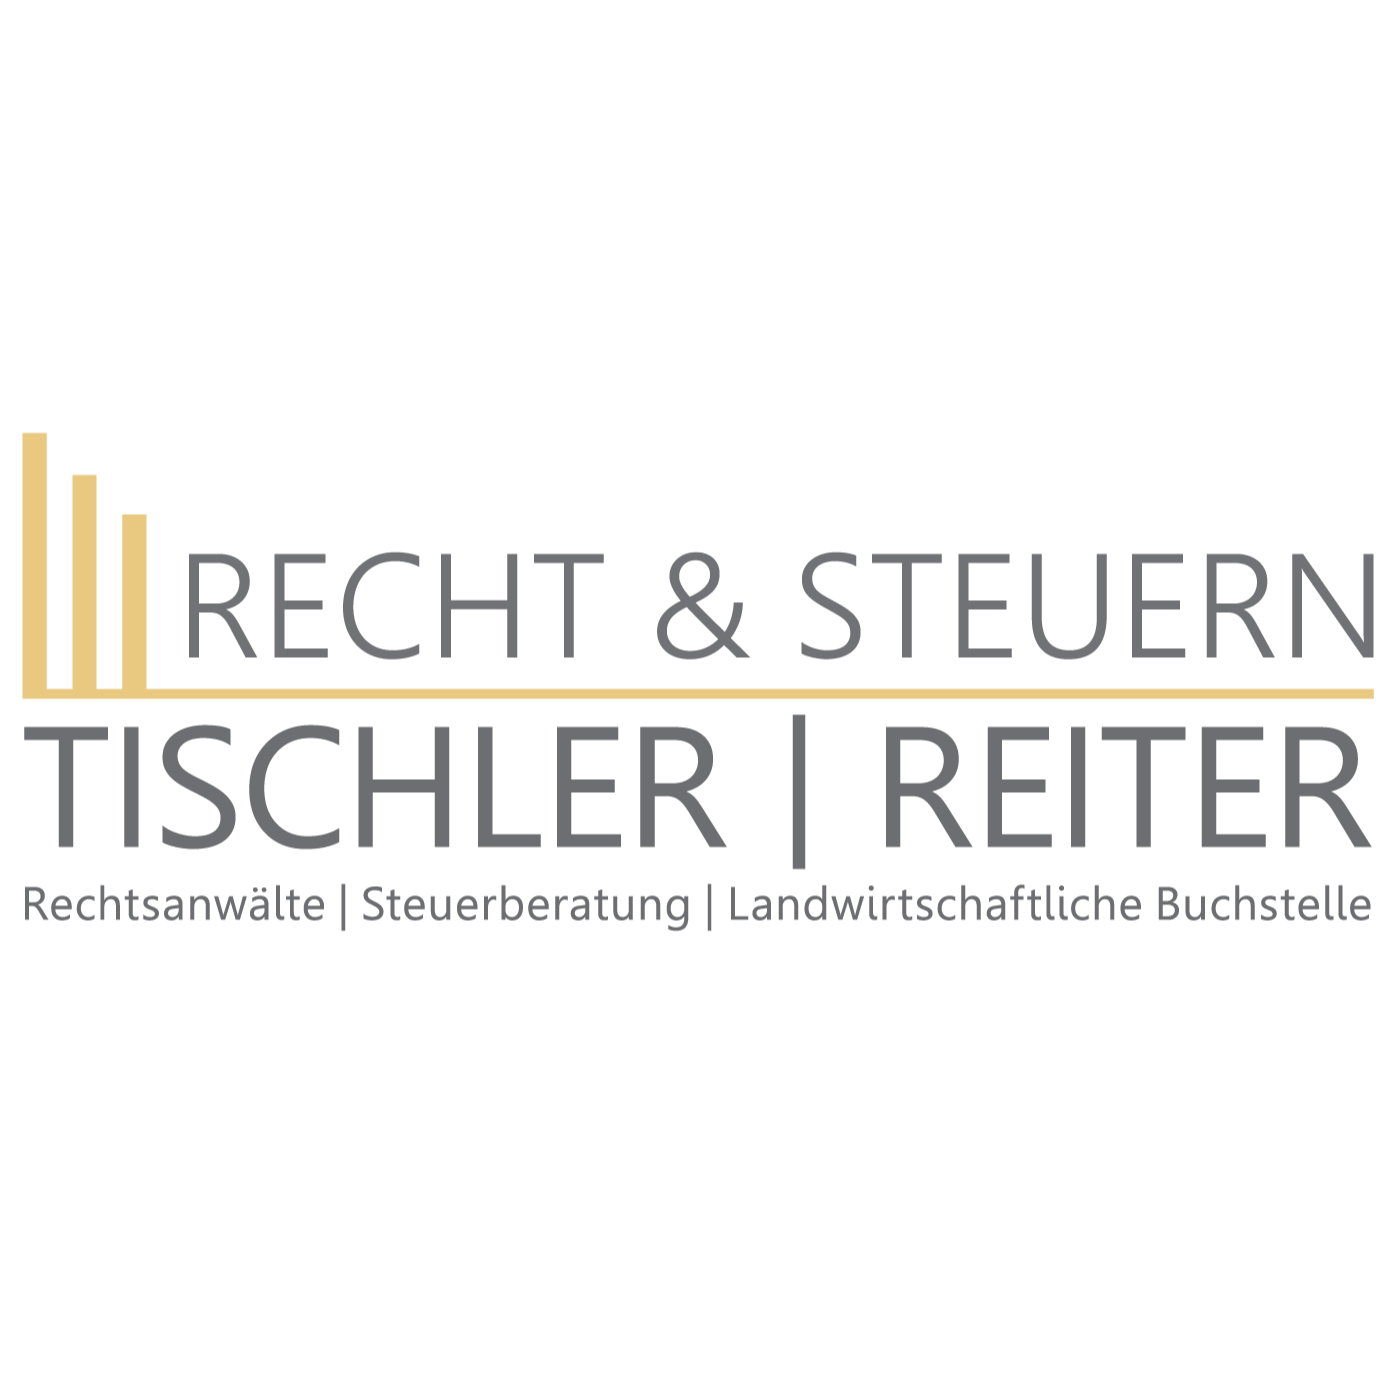 Recht & Steuern Tischler - Reiter in Arnstorf - Logo